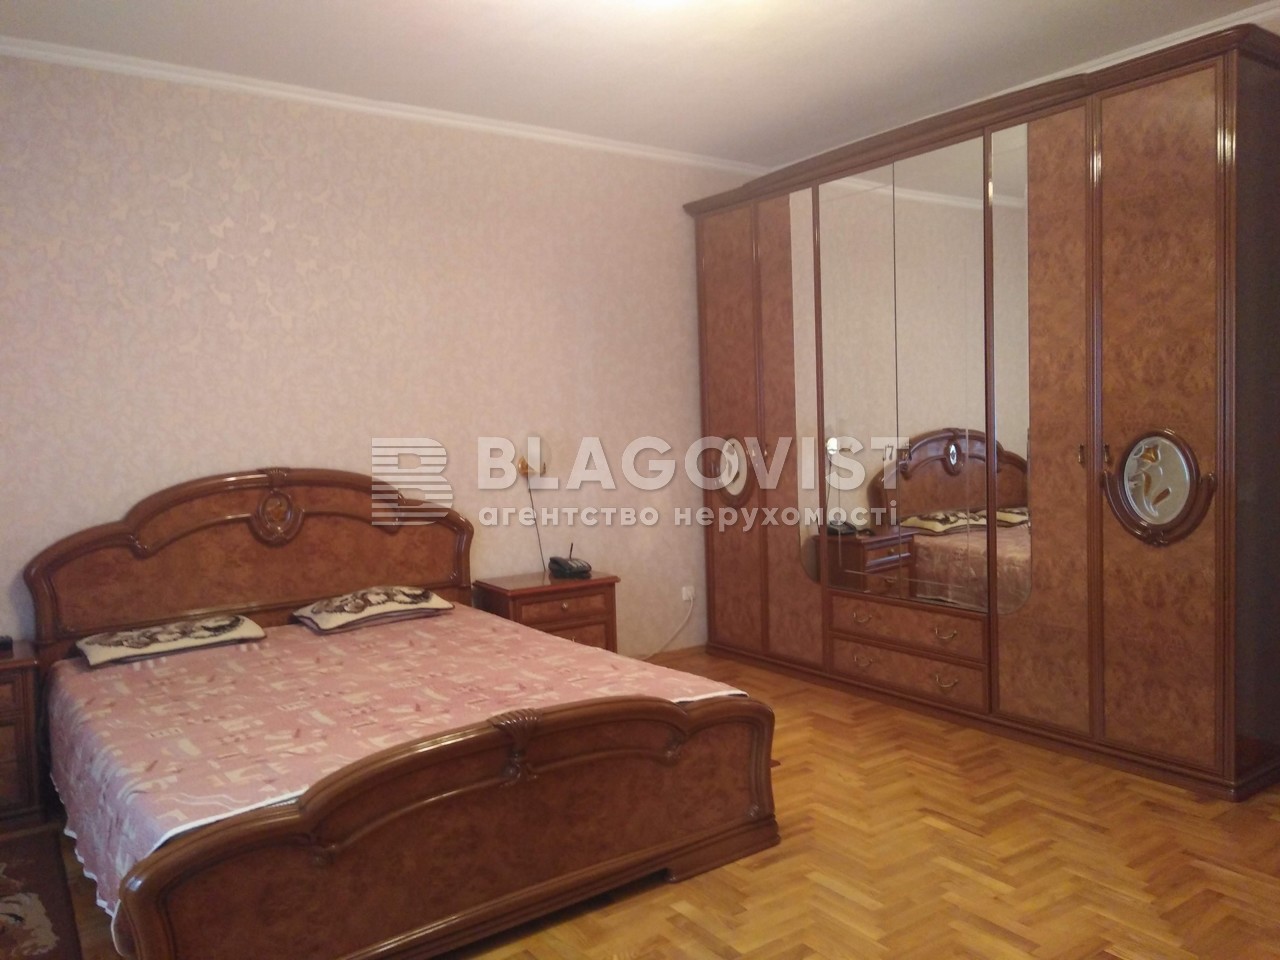 Квартира G-516248, Героев Сталинграда просп., 22, Киев - Фото 12